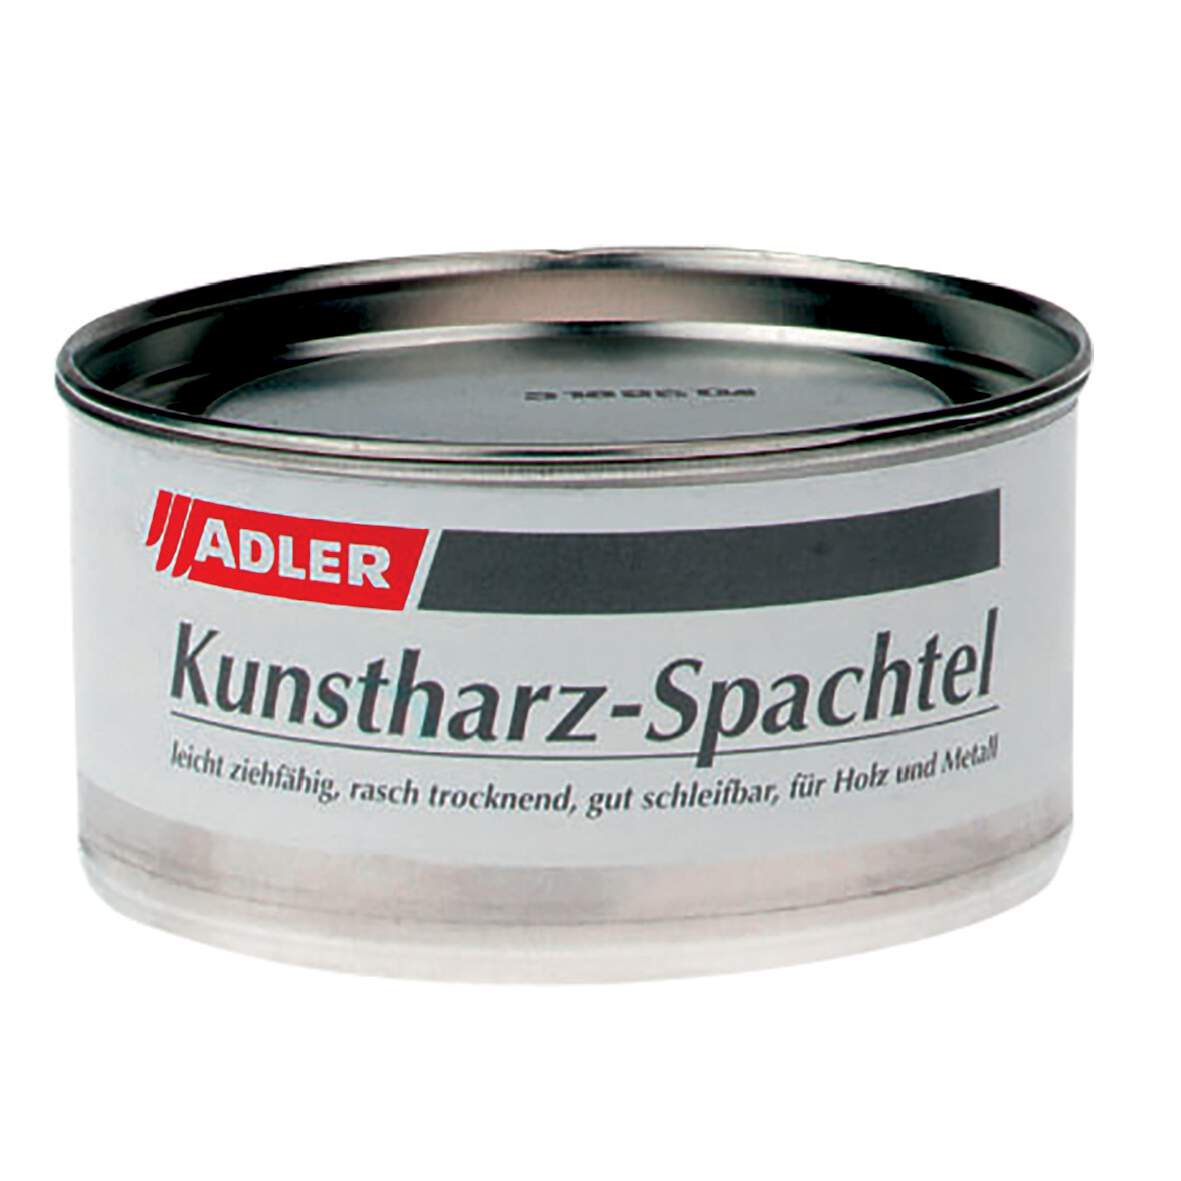 1094621 - Kunstharz-Spachtel weiss 400gr